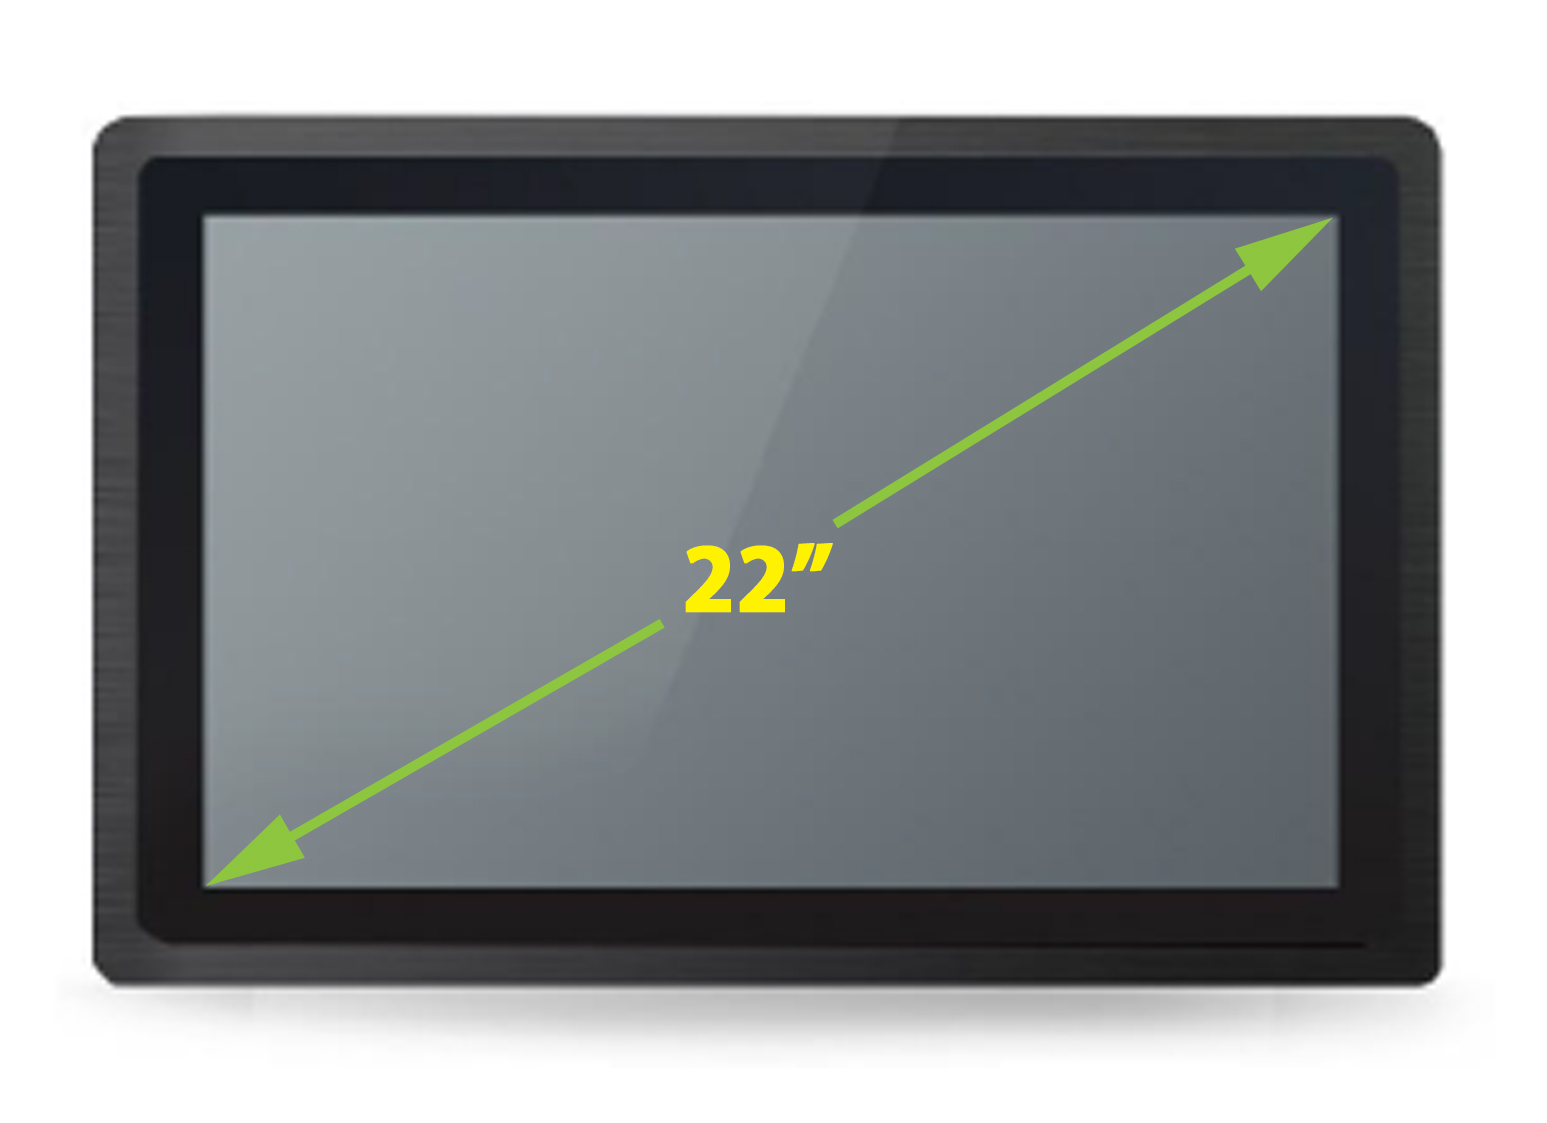  Monitor dotykowy PC MobiBox M22  Monitor dotykowy Ekran pojemnociowy capacitive wywietlacz 22 cali LED mobilator.pl New Portable Devices VGA HDMI